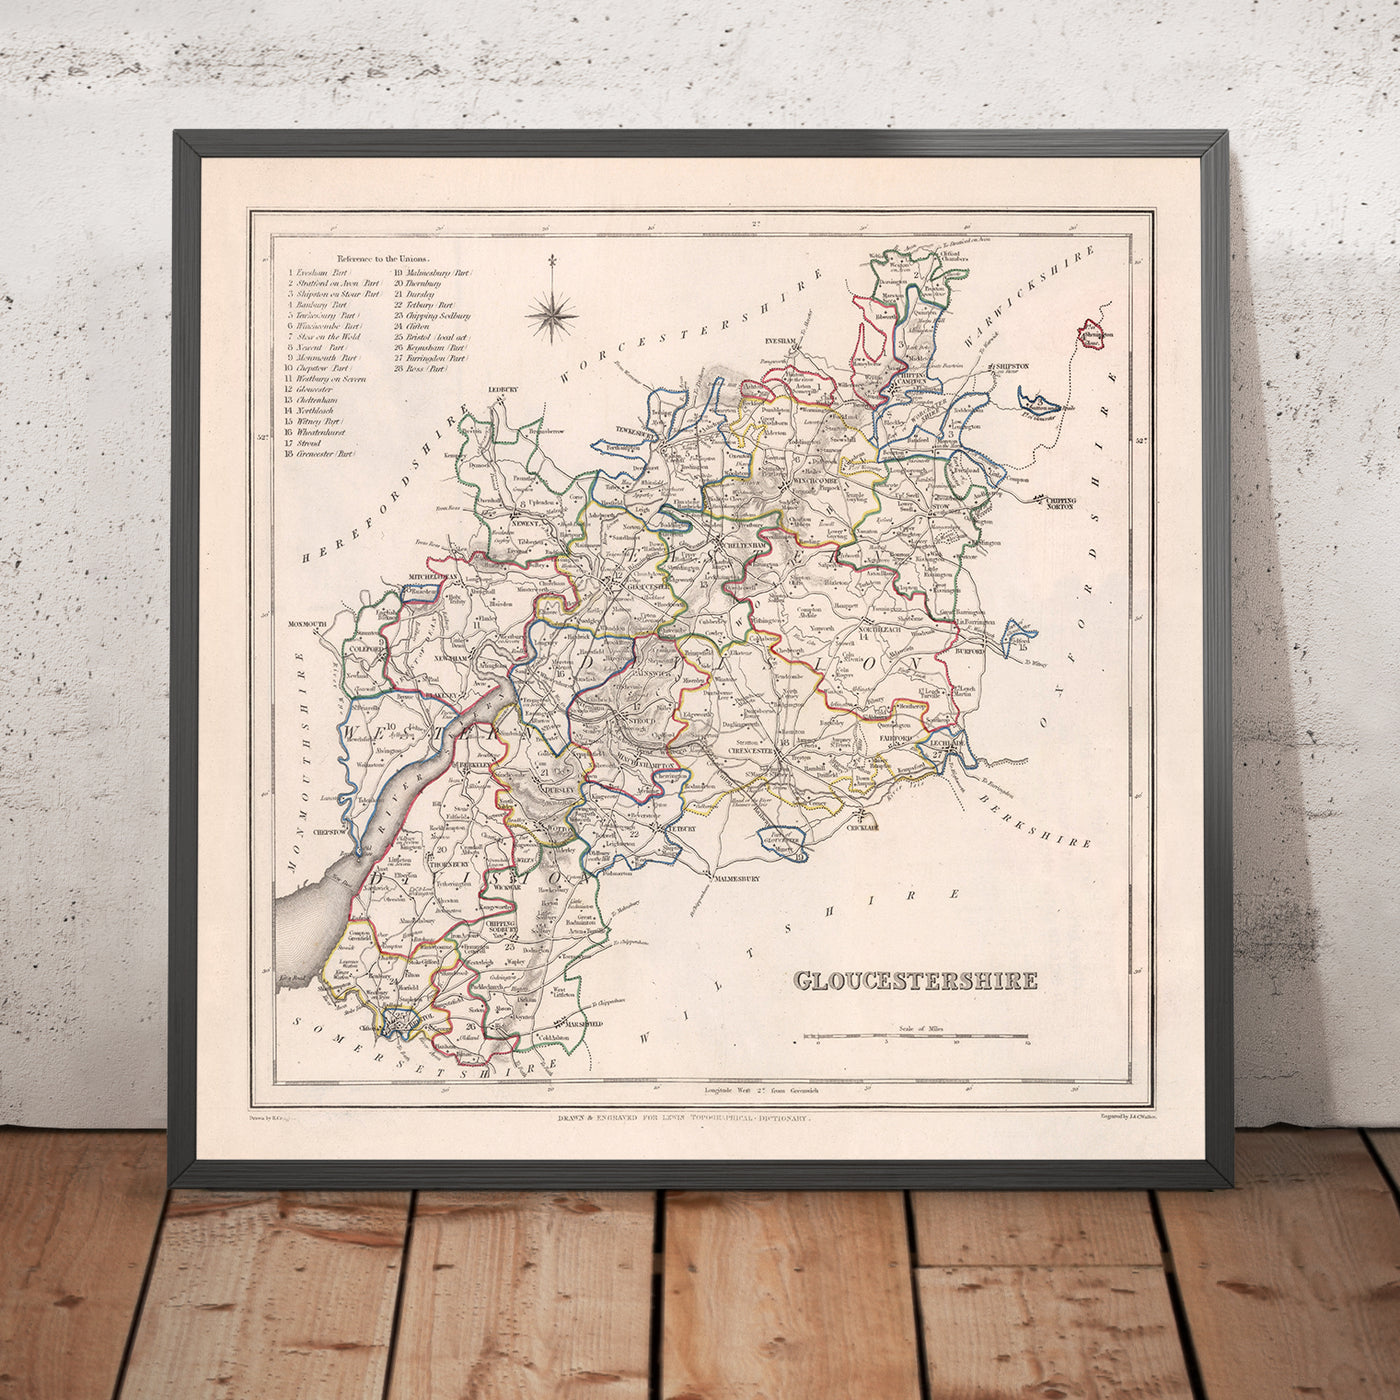 Alte Karte von Gloucestershire von Samuel Lewis, 1844: Bristol, Cheltenham, Cirencester, Stroud, Tewkesbury